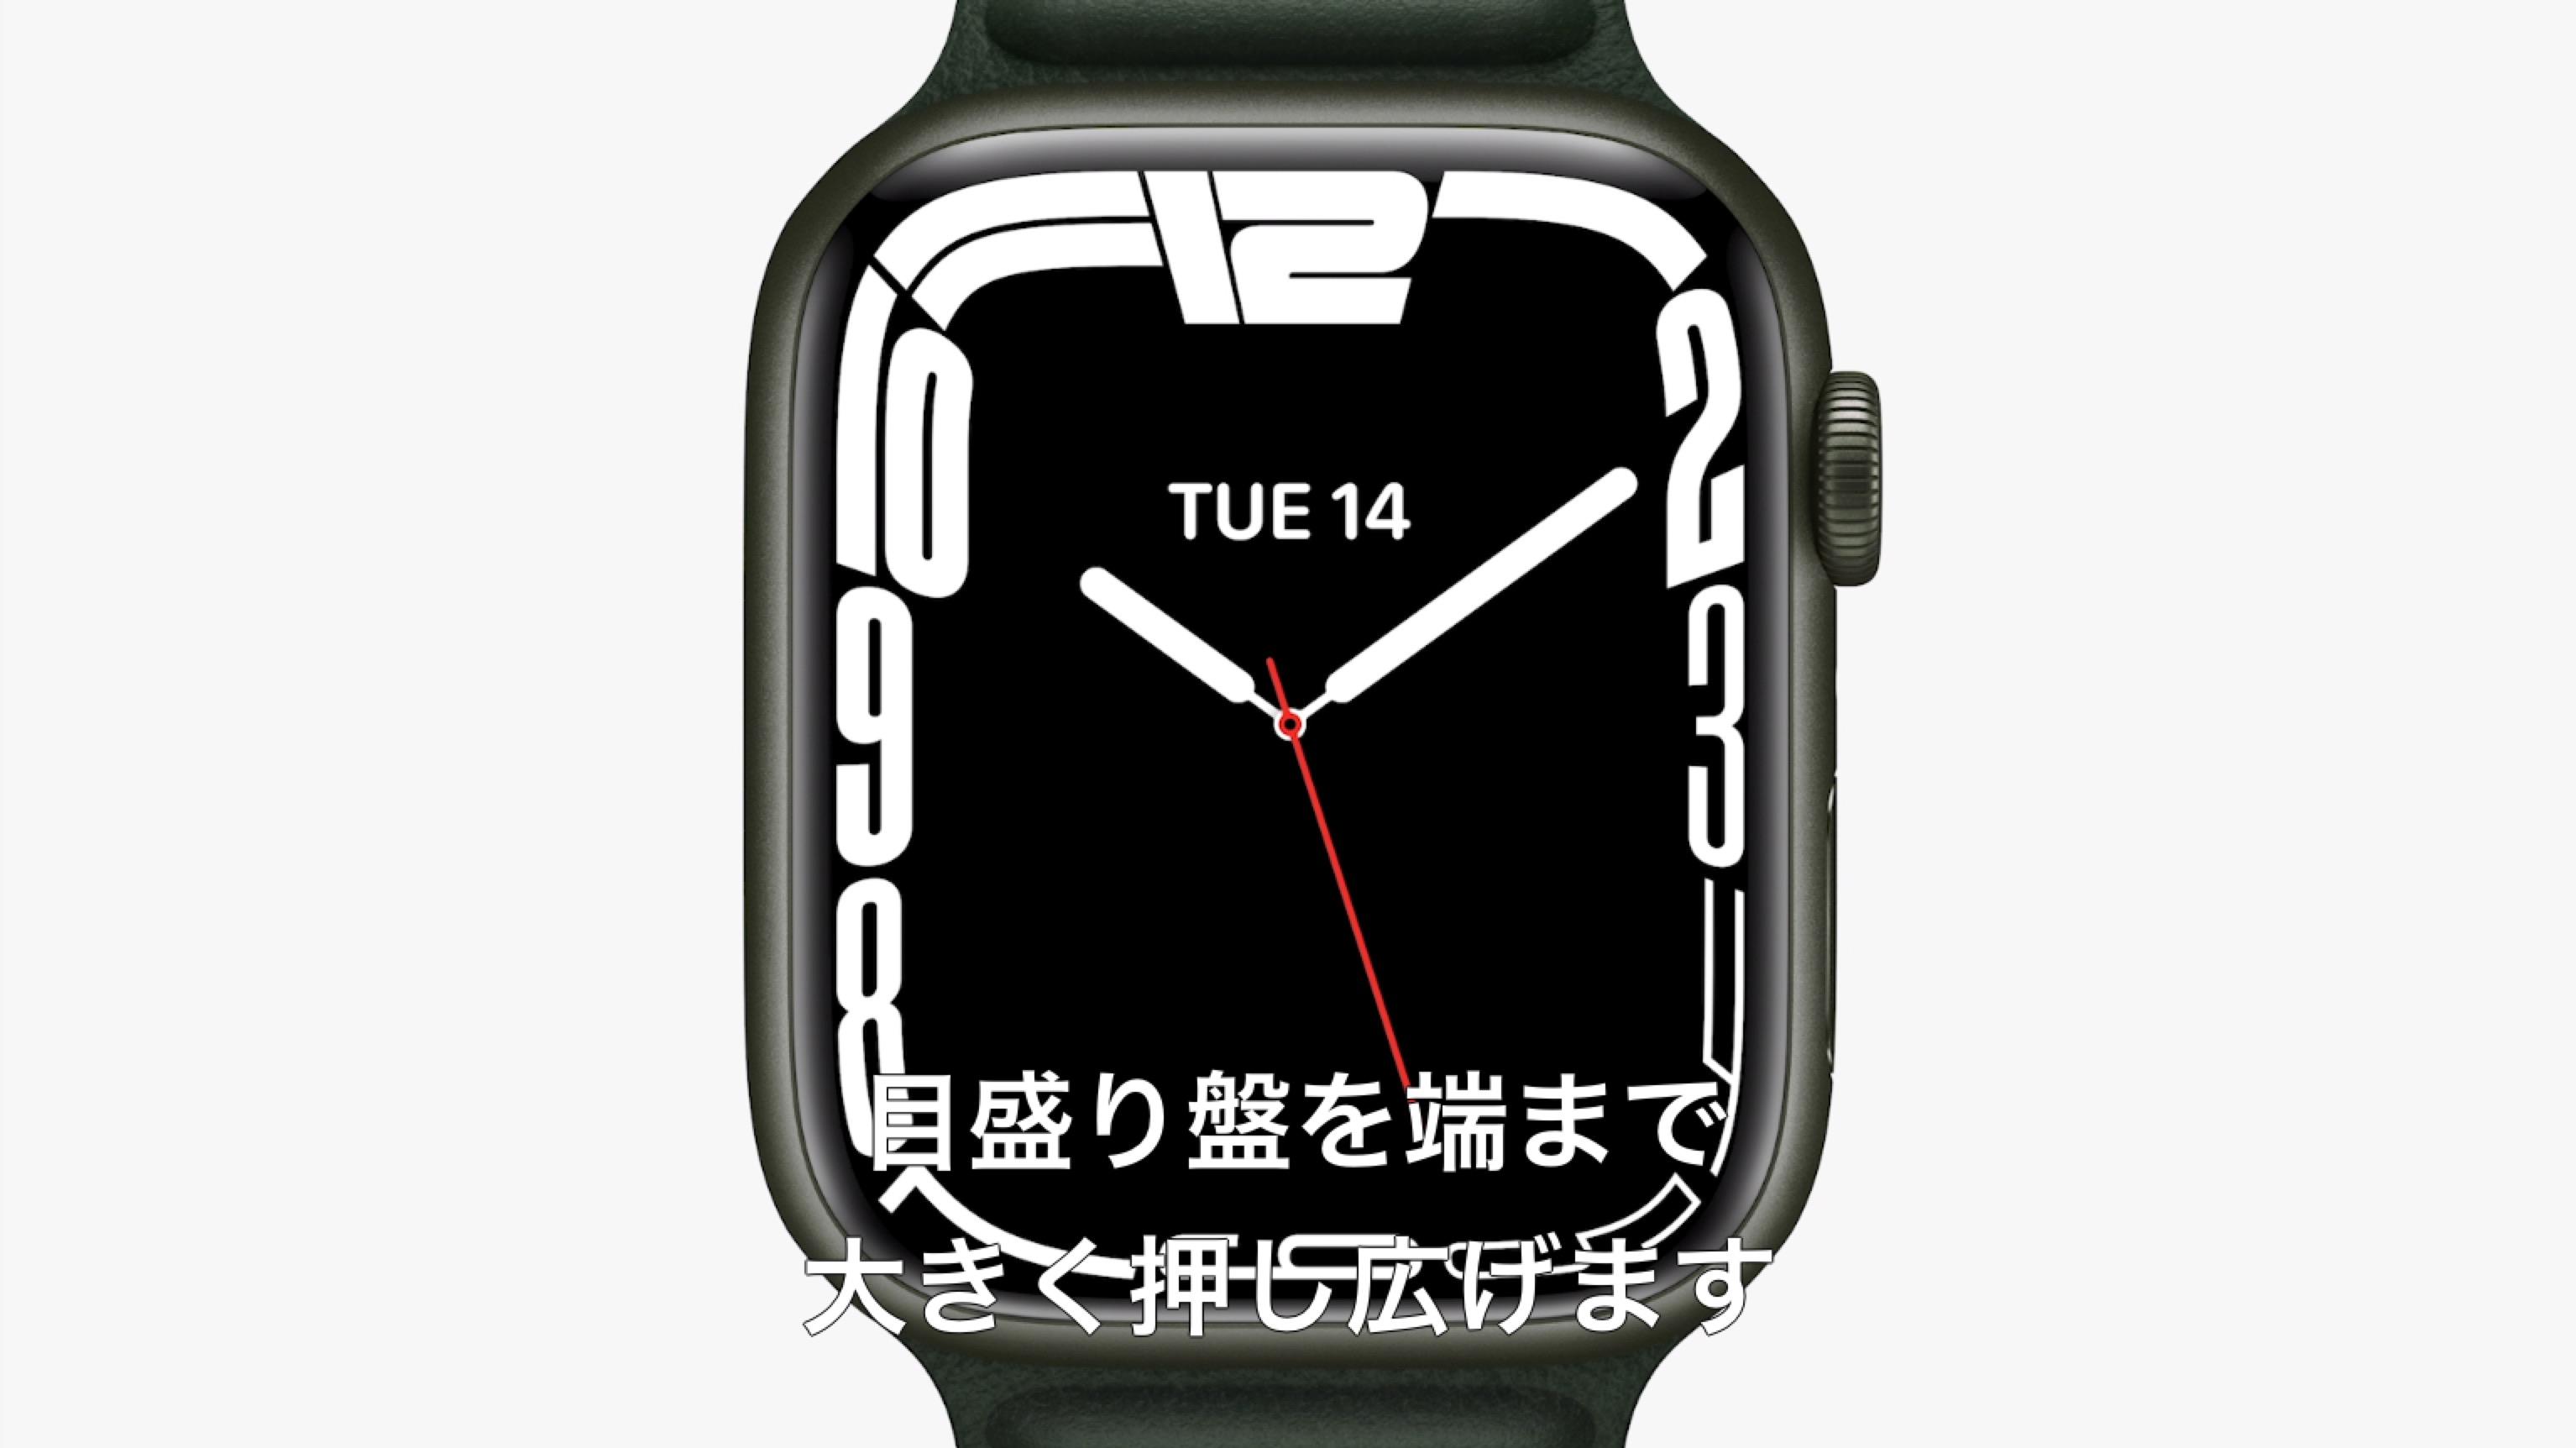 画面大きいし頑丈だし、Apple Watch Series 7も買いのガジェットか